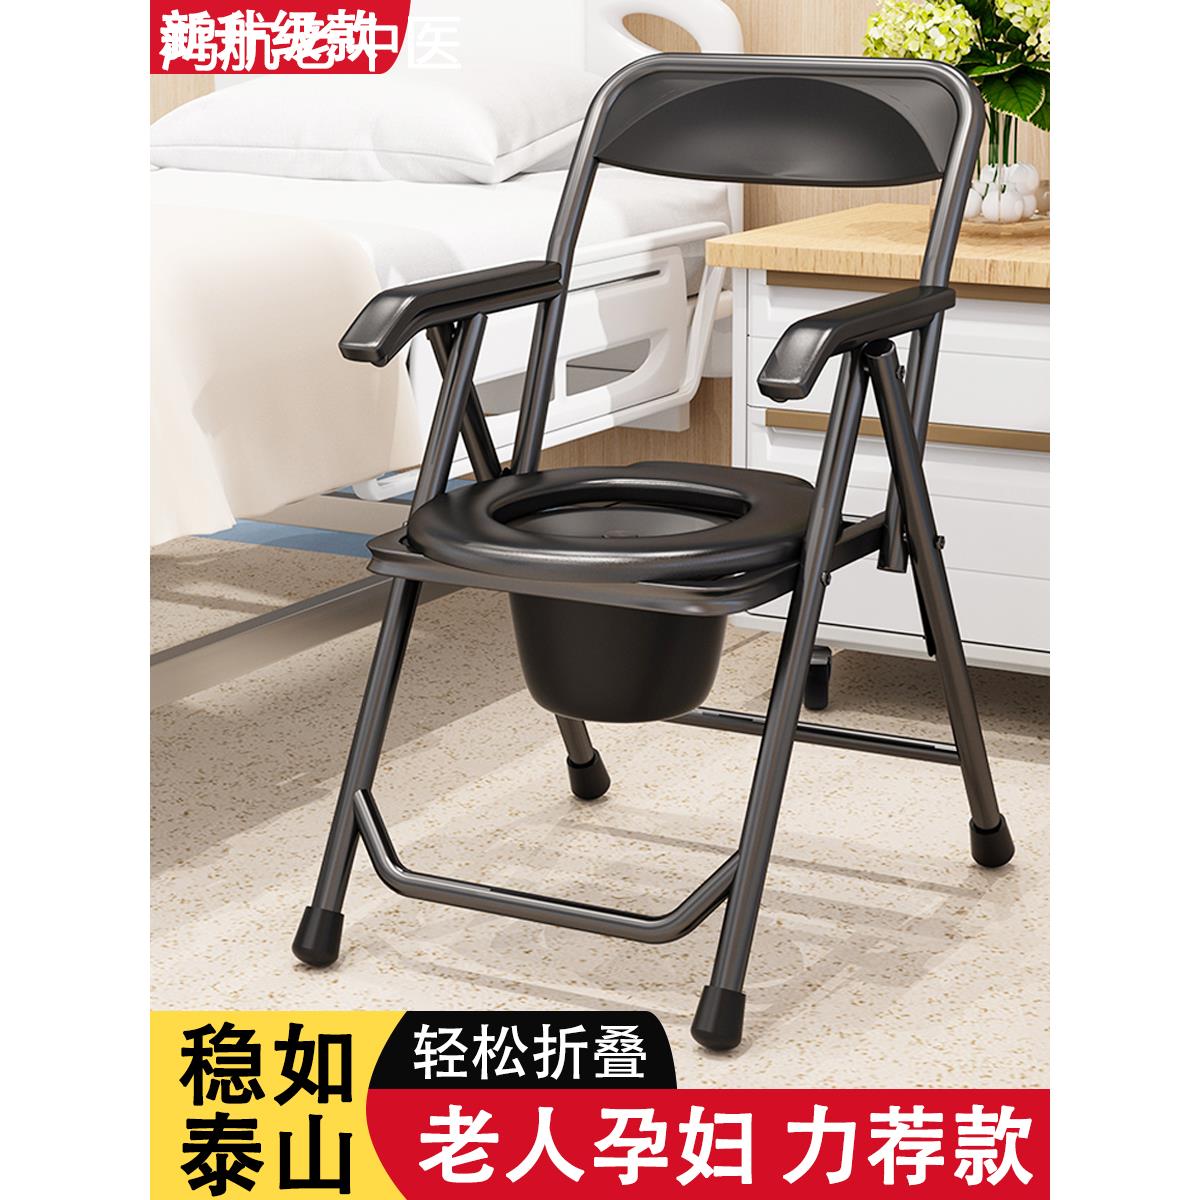 老年人坐便器病人孕妇可折叠不锈钢坐便椅子家用厕所移动马桶凳子